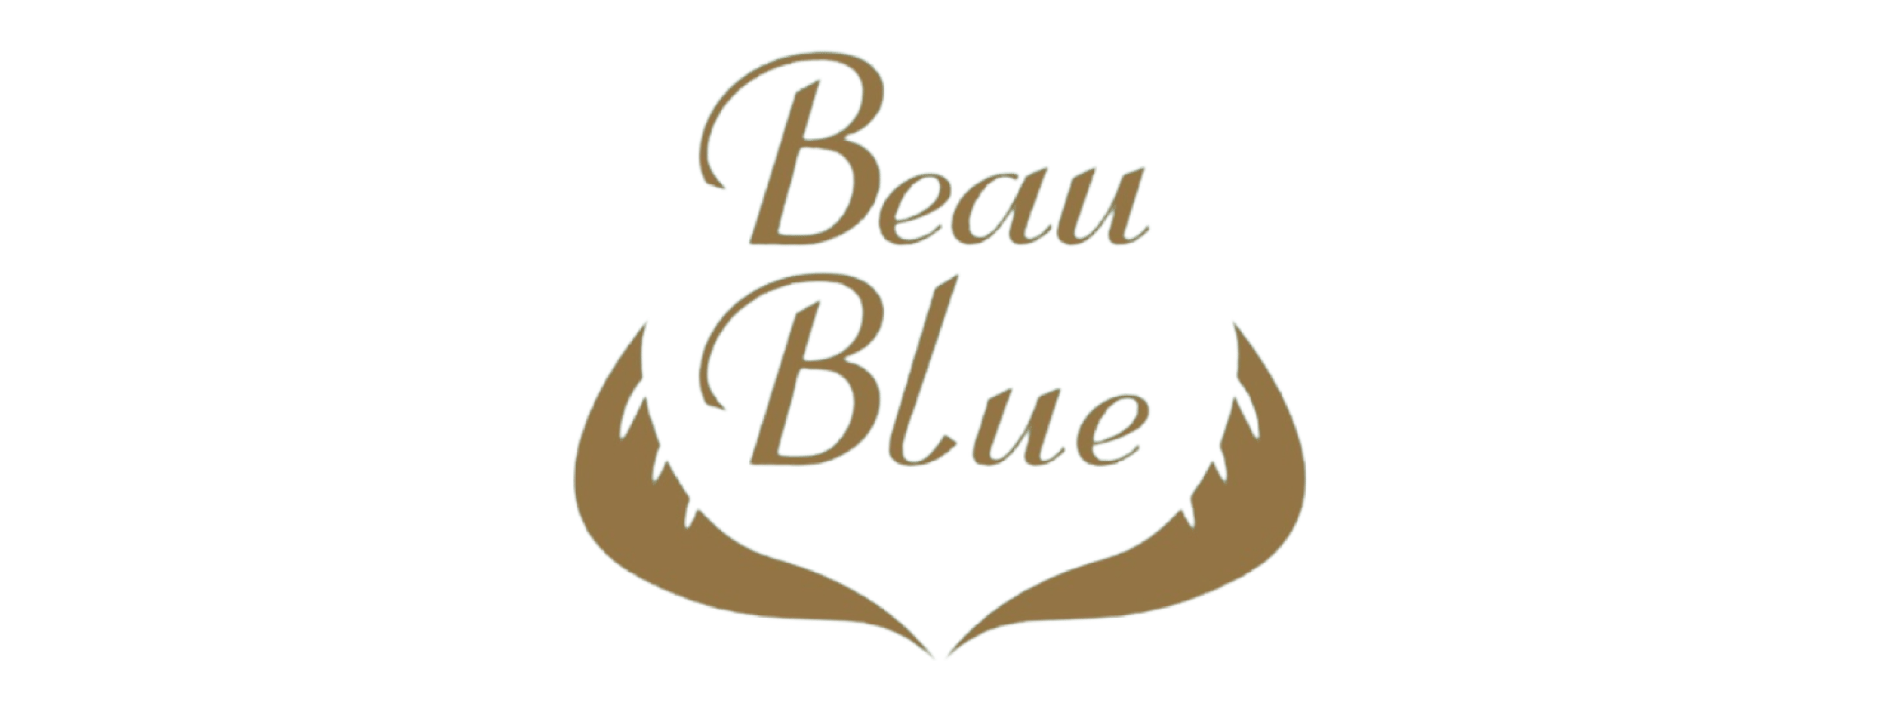 Beau Blue